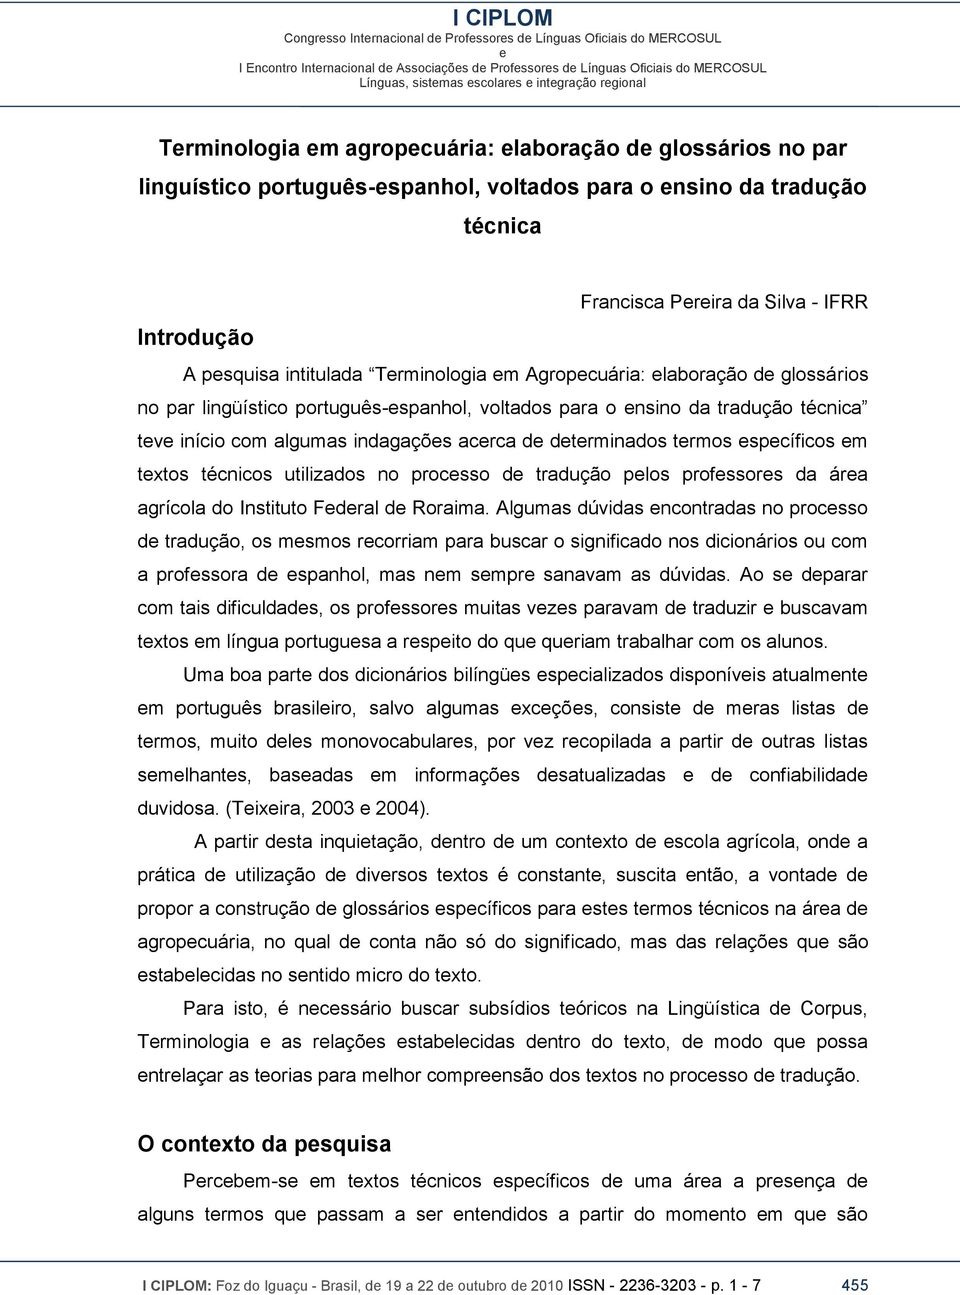 txtos técnicos utilizados no procsso d tradução plos profssors da ára agrícola do Instituto Fdral d Roraima.